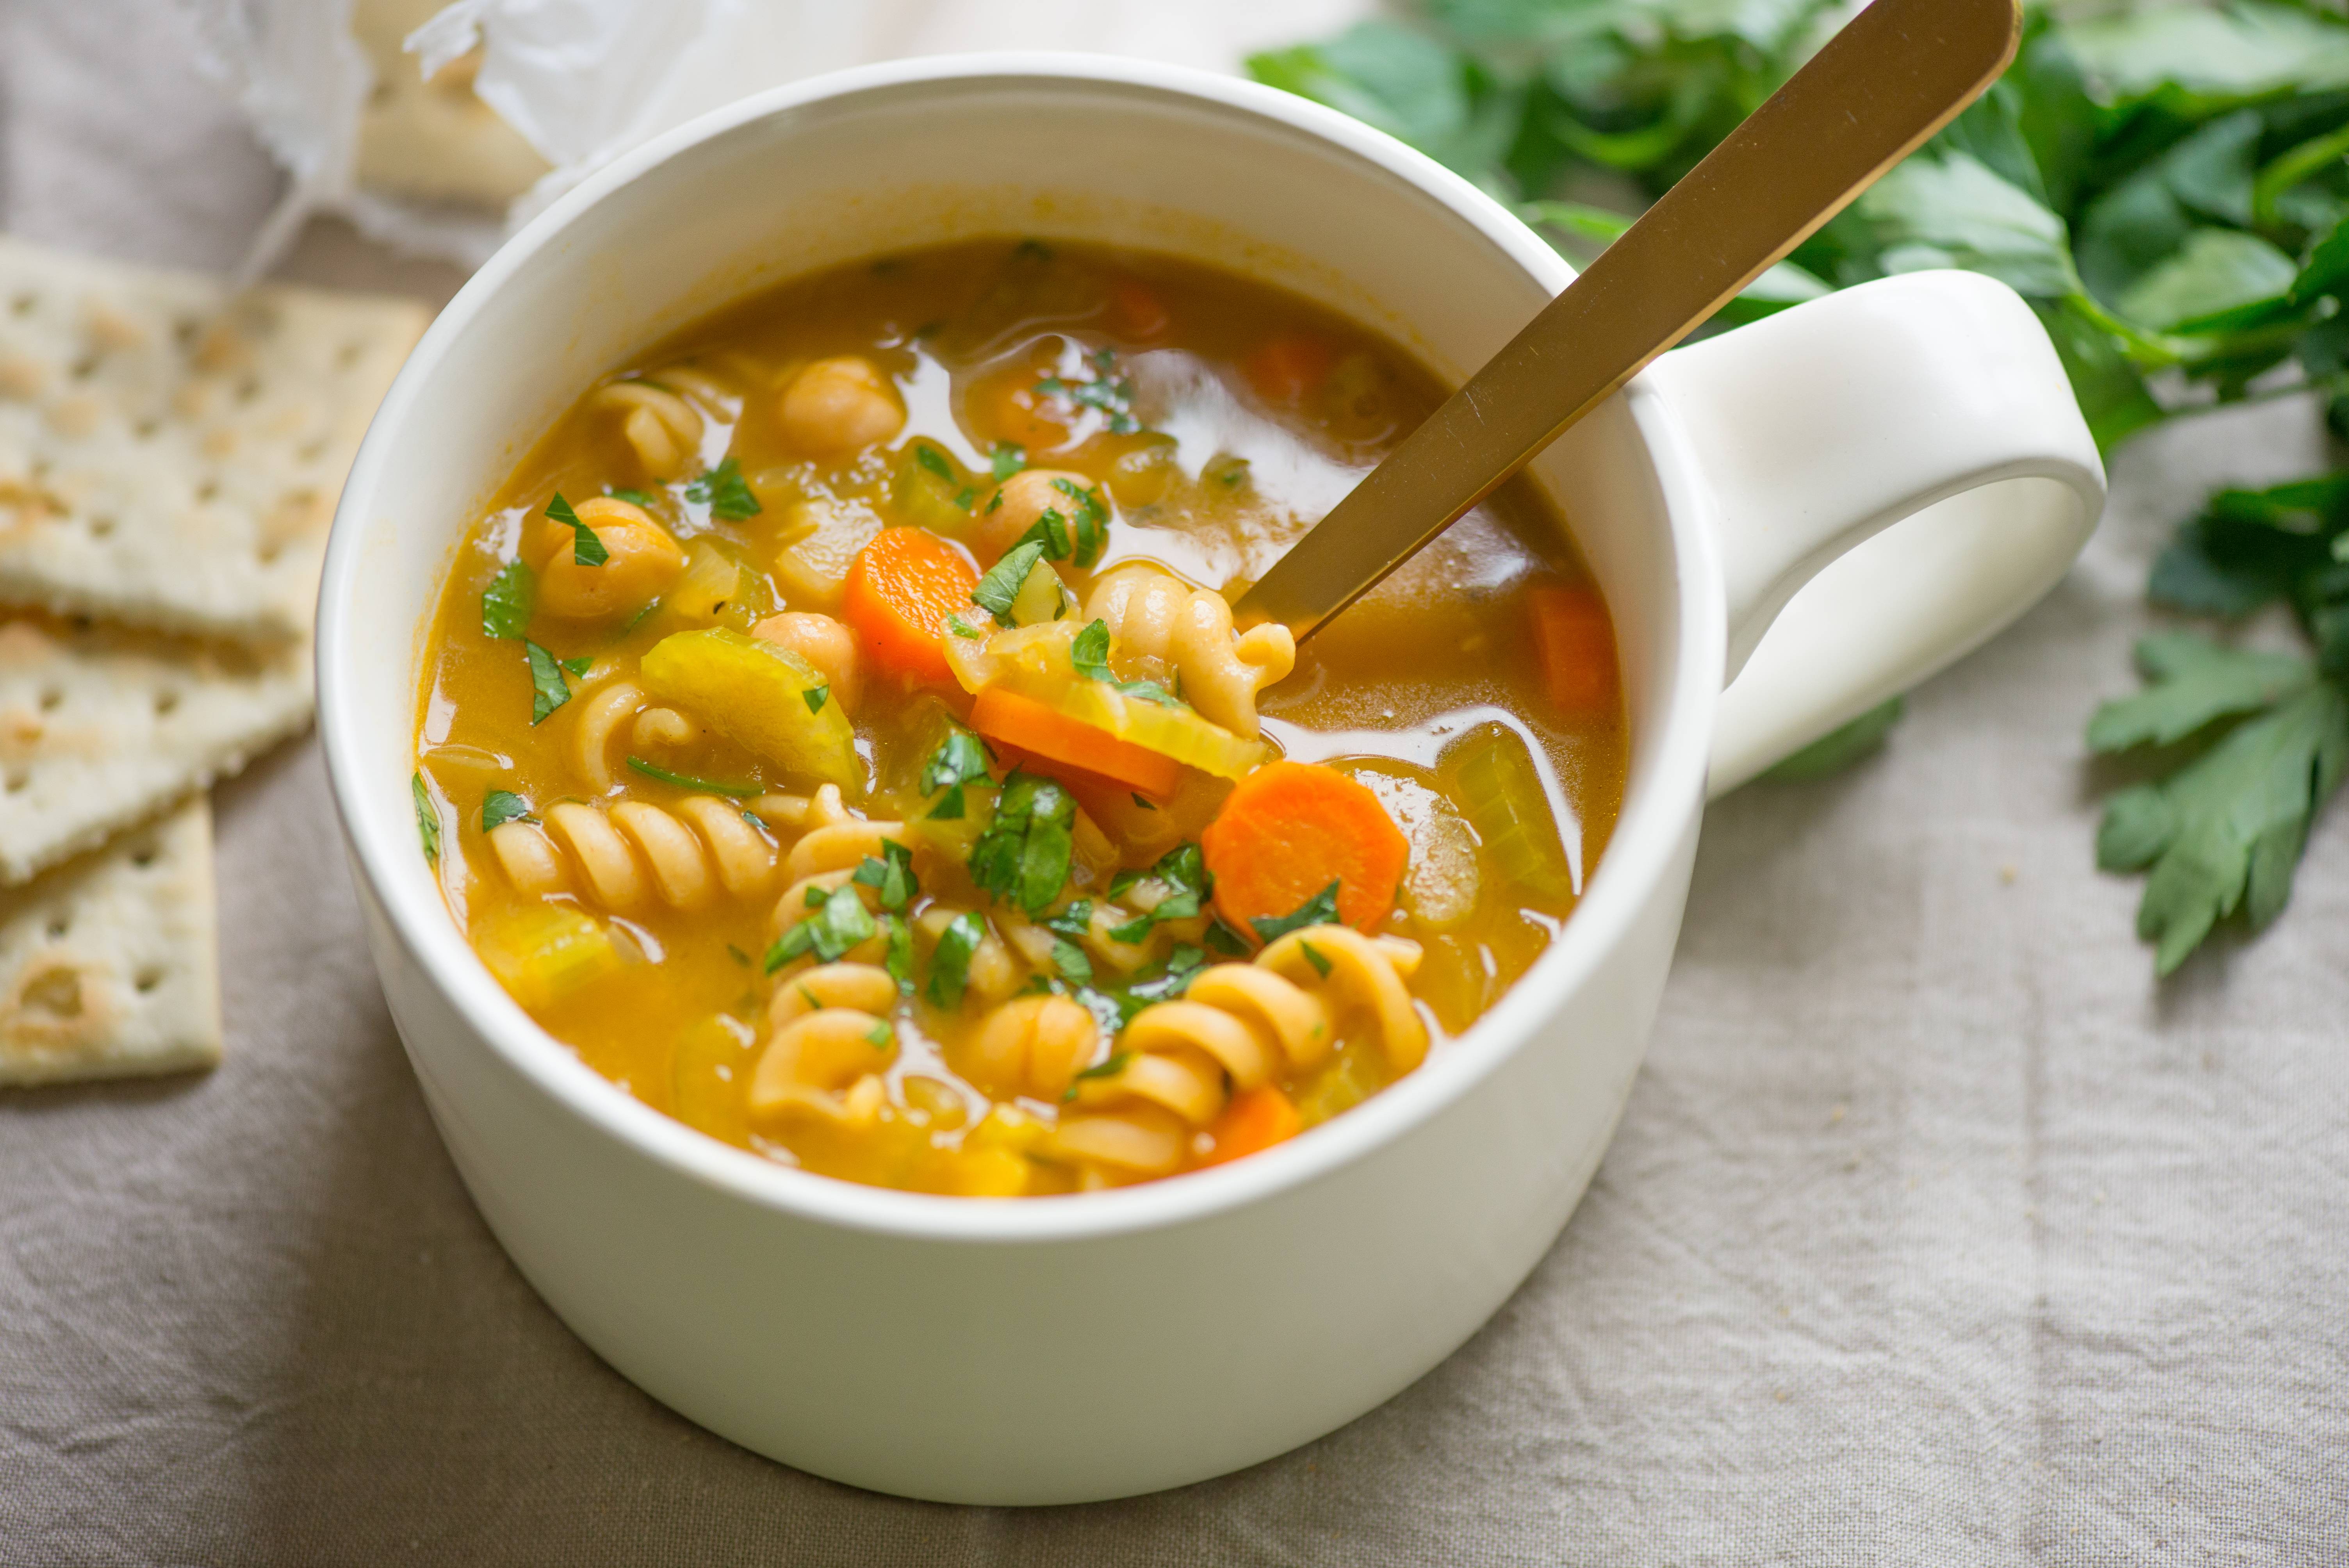 Овощной суп: рецепт диетический без мяса, как сварить, приготовить на простом бульоне из овощей для похудения? | customs.news